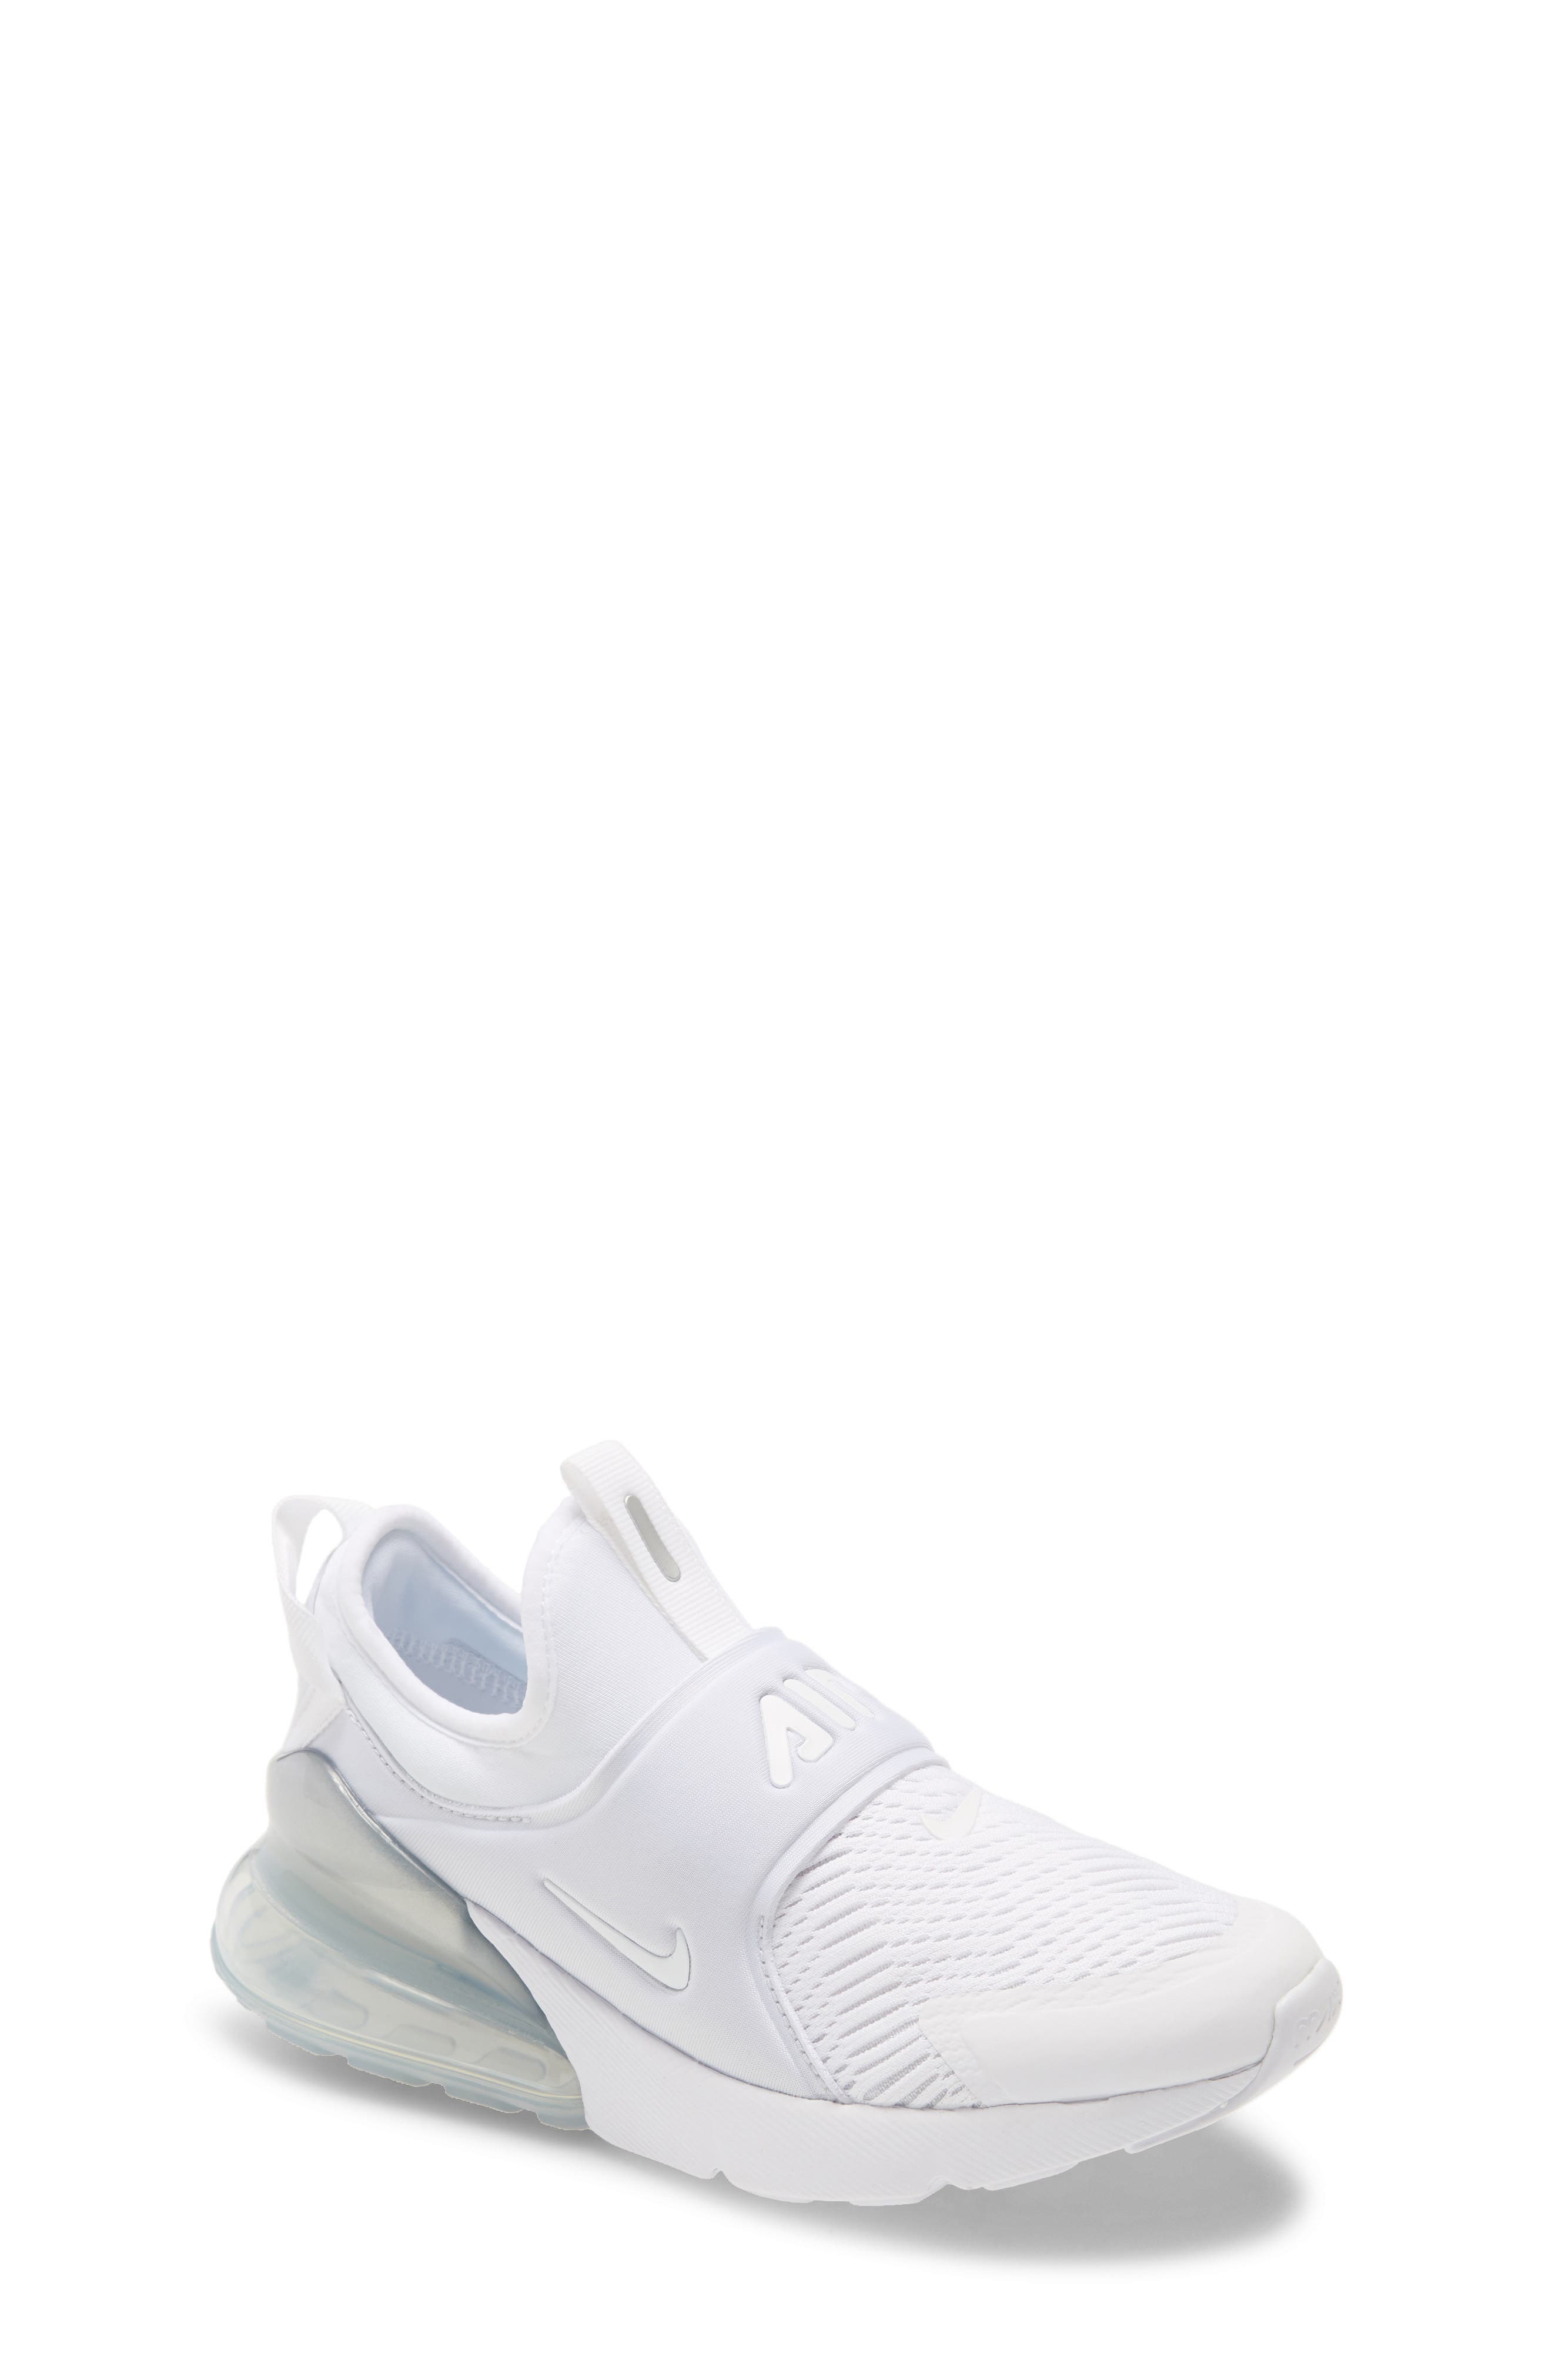 toddler girl white sneaker